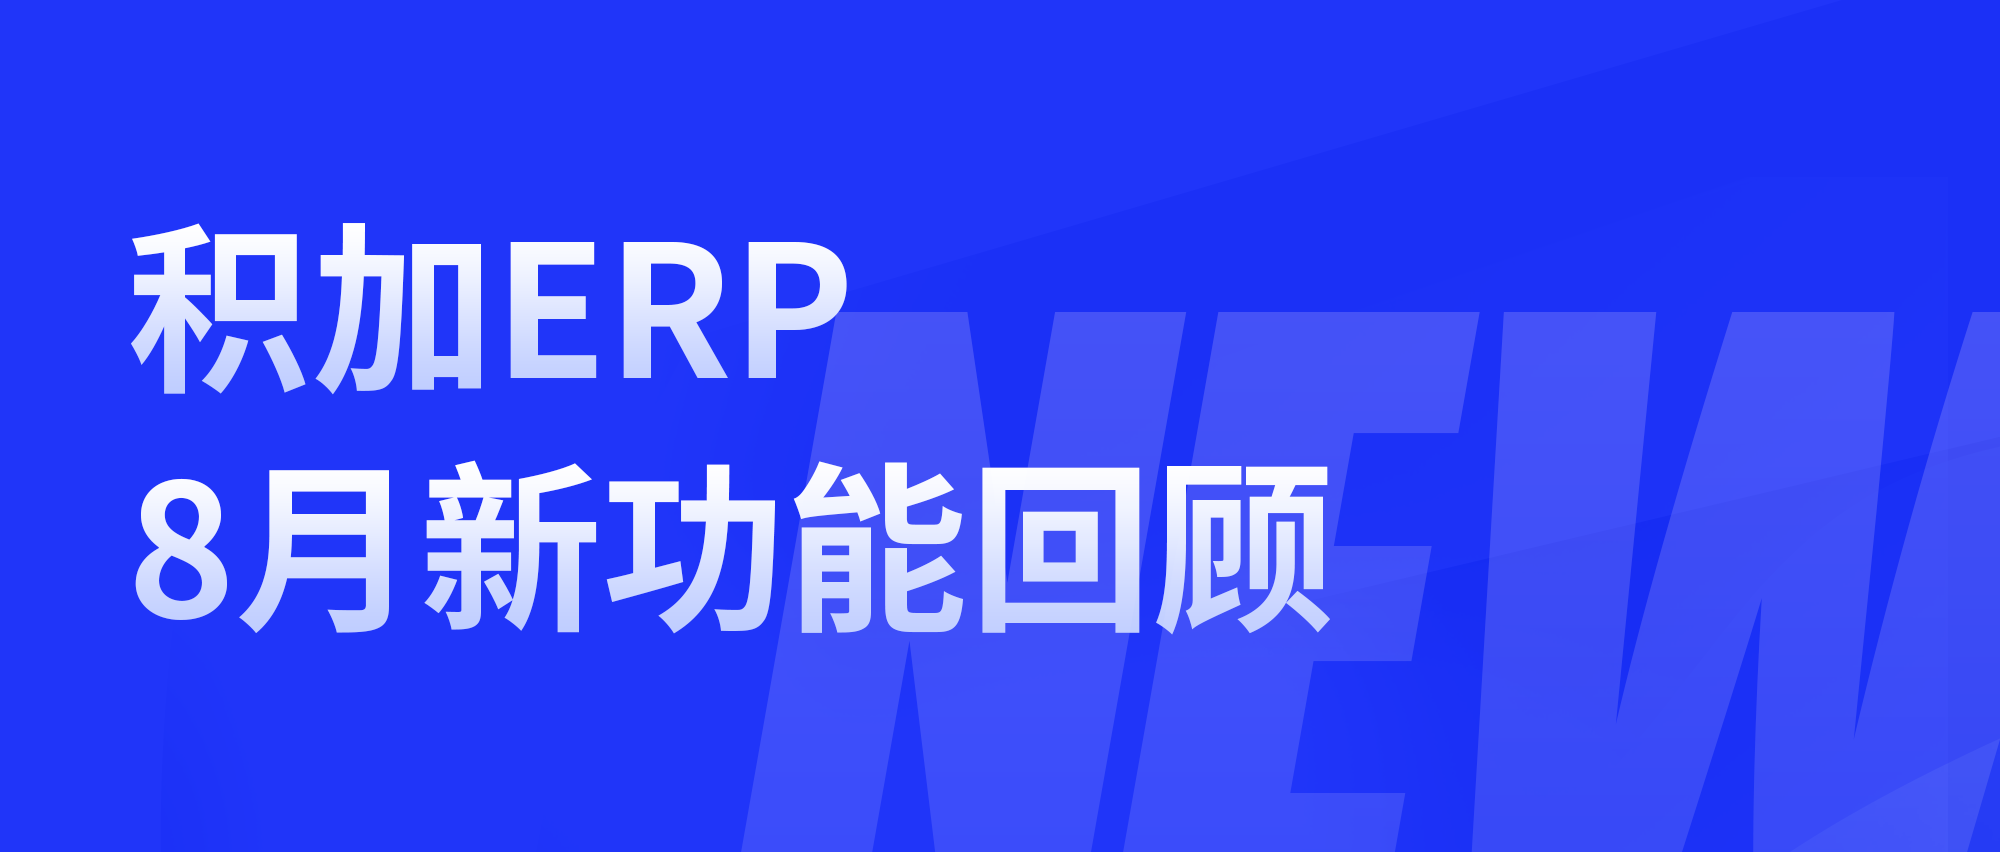 积加ERP | 8月新功能合集